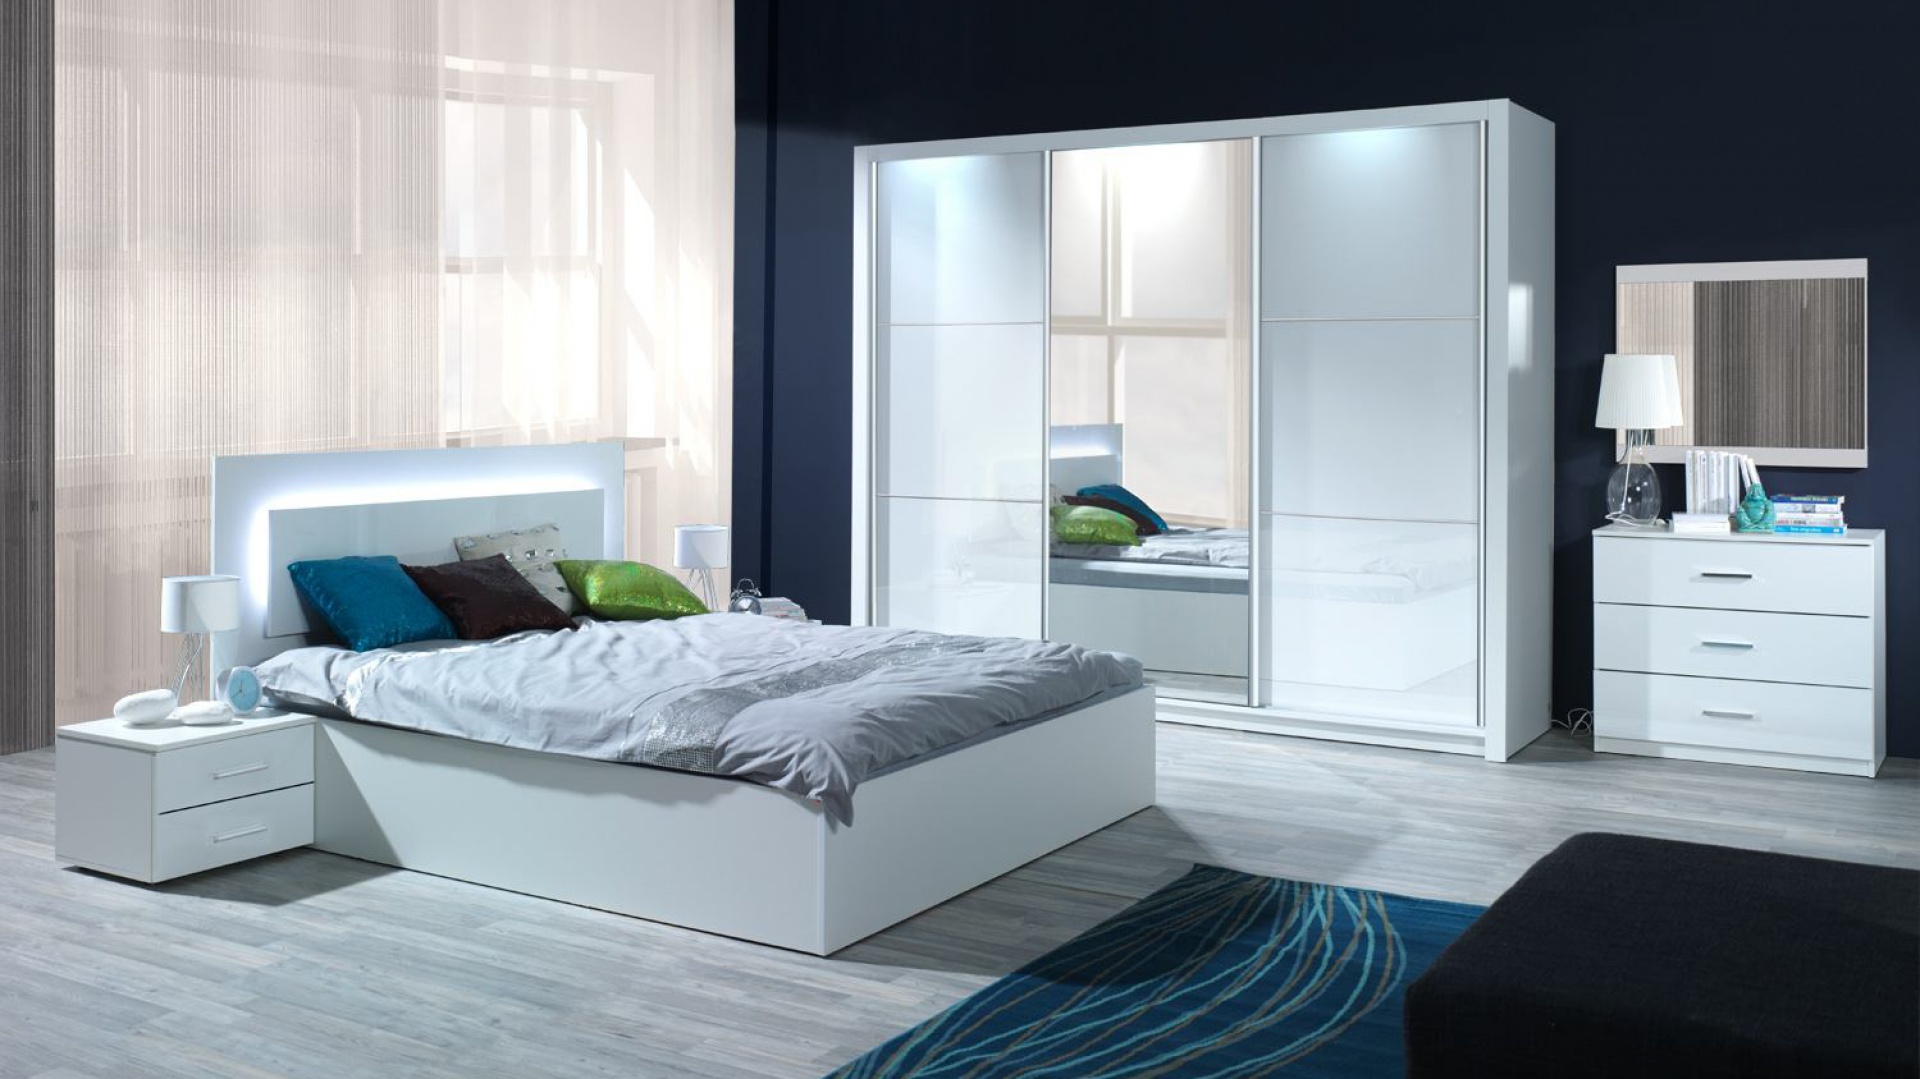 Sypialnia Siena w kolorze białym na wysoki połysk. Oparcie łóżka wyposażone jest w efektowny system oświetlania. Fot. Agata Meble